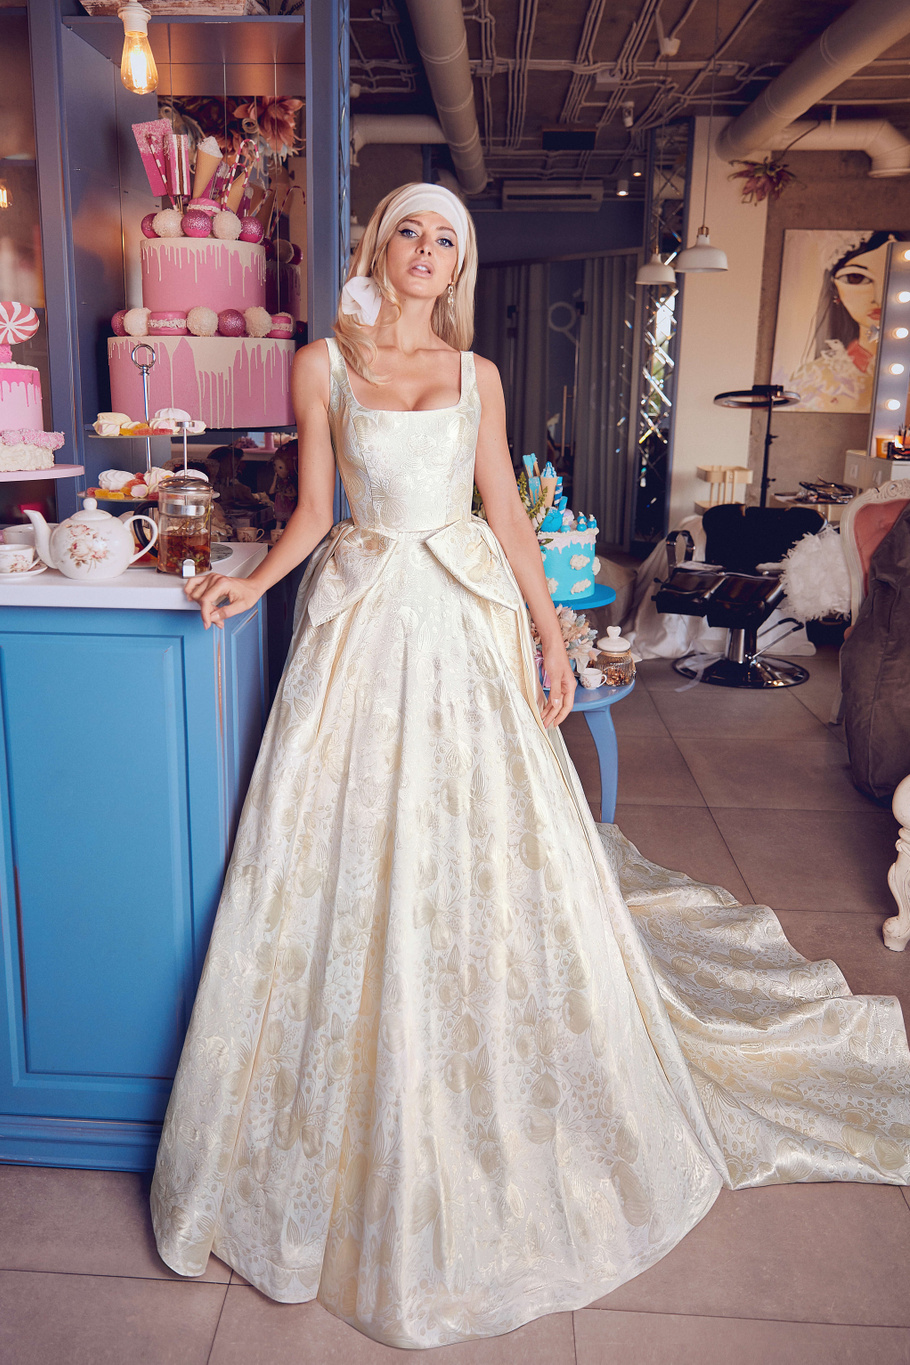 Купить свадебное платье «Персея» Бламмо Биамо из коллекции Свит Лайф 2021 года в Москве